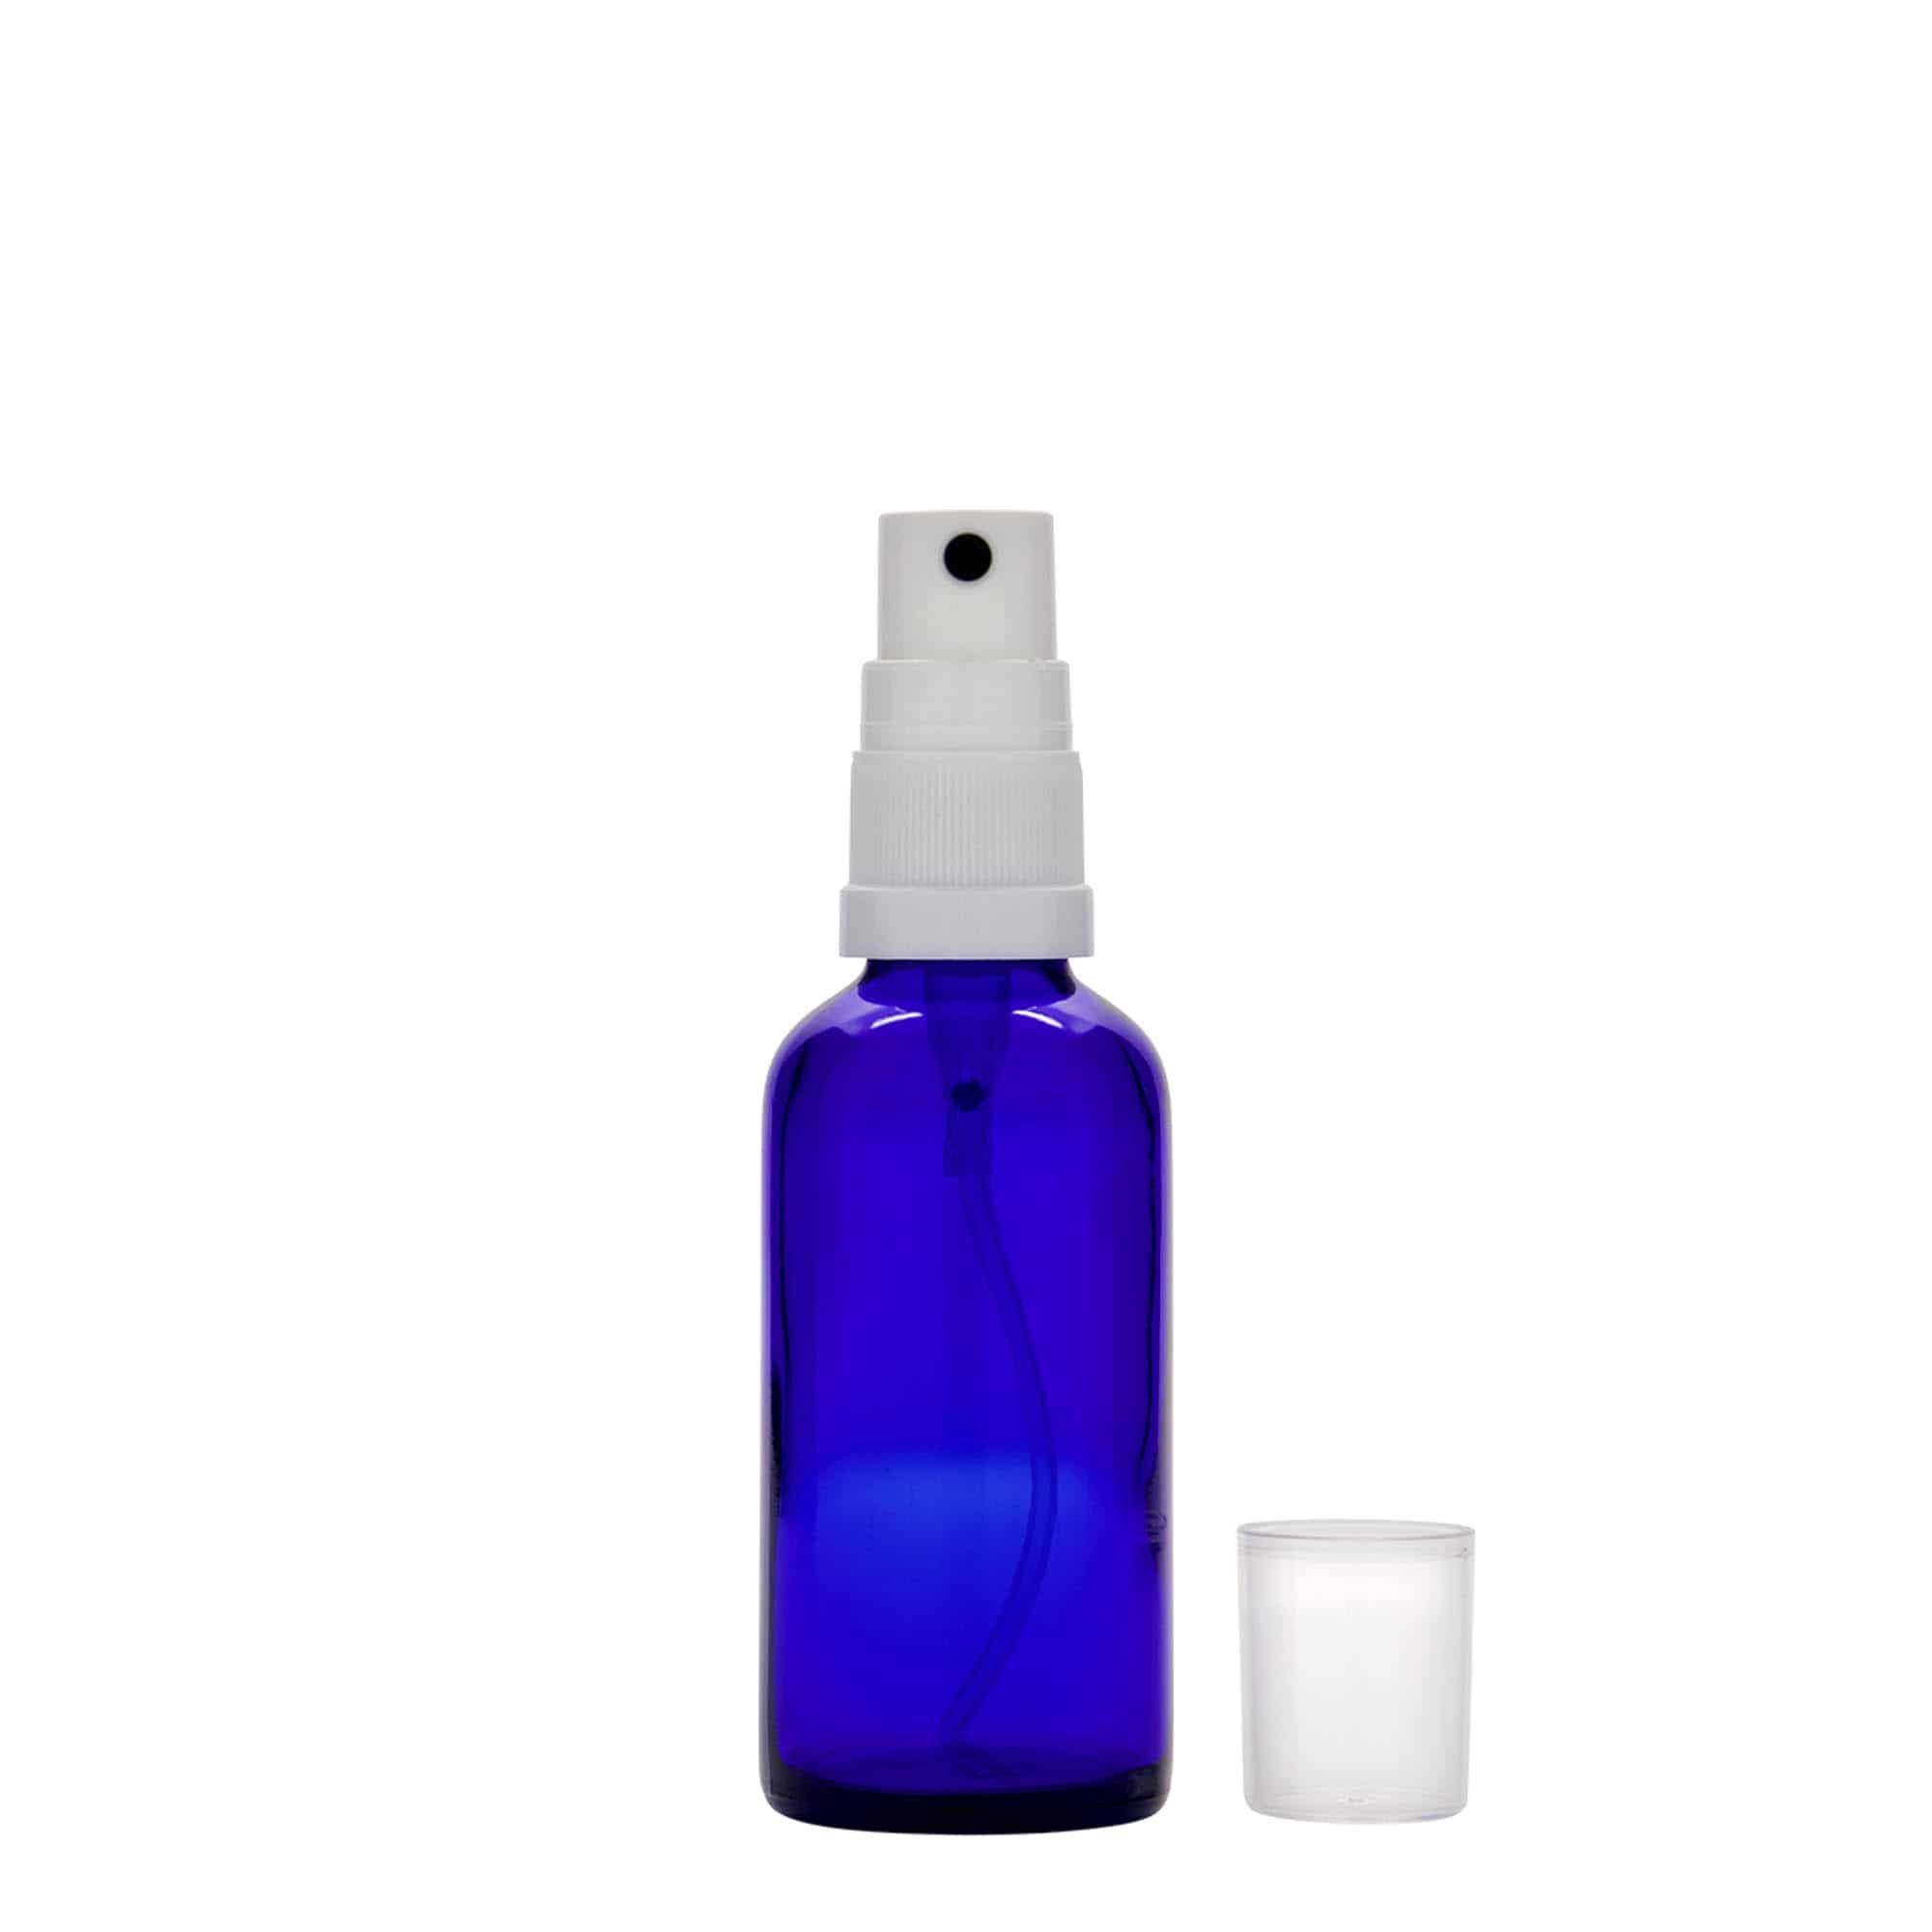 50 ml butelka farmaceutyczna z rozpylaczem, szkło, kolor błękit królewski, zamknięcie: DIN 18